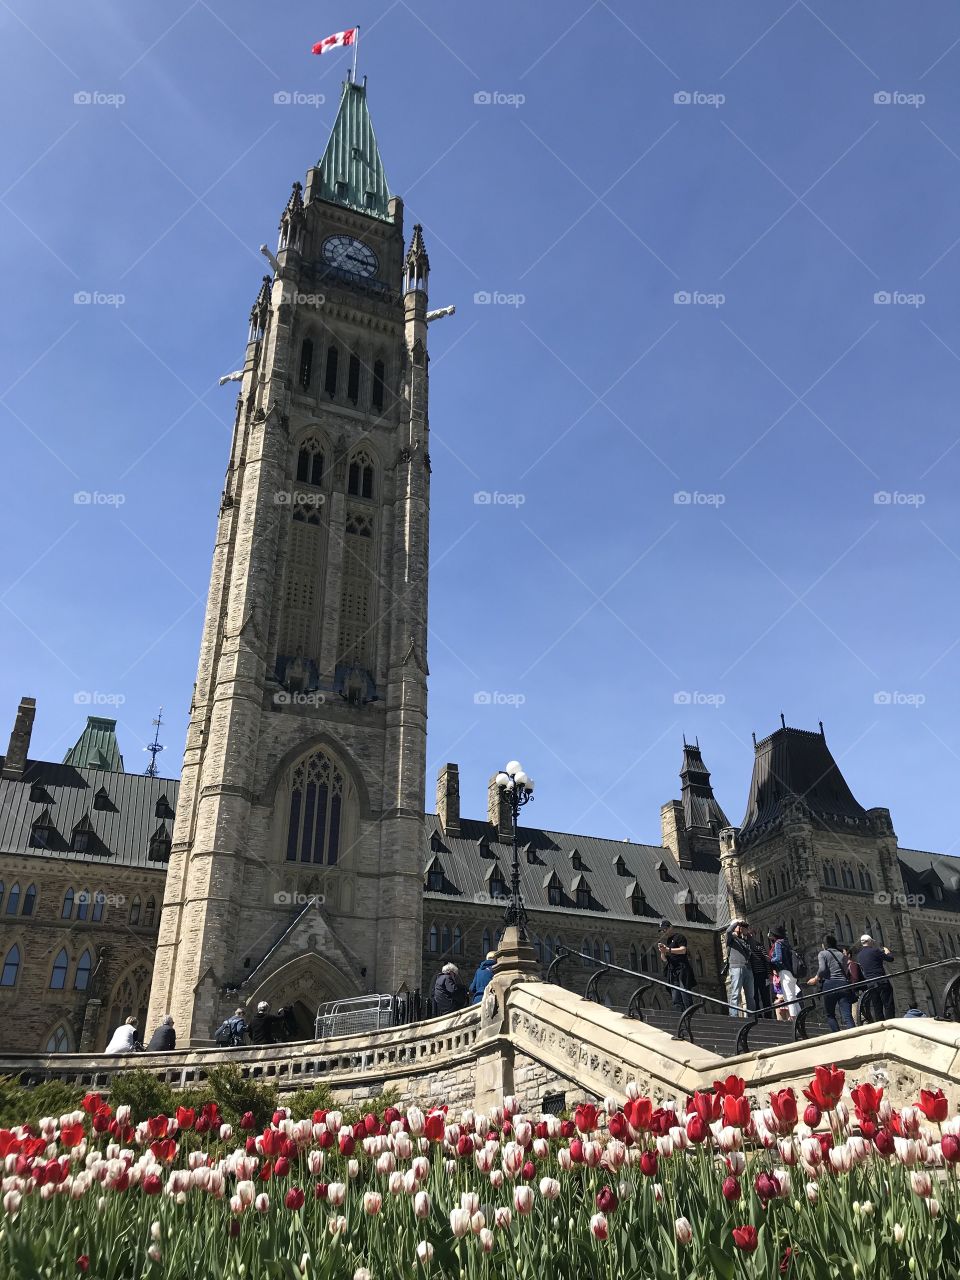 Canada parliament tulips